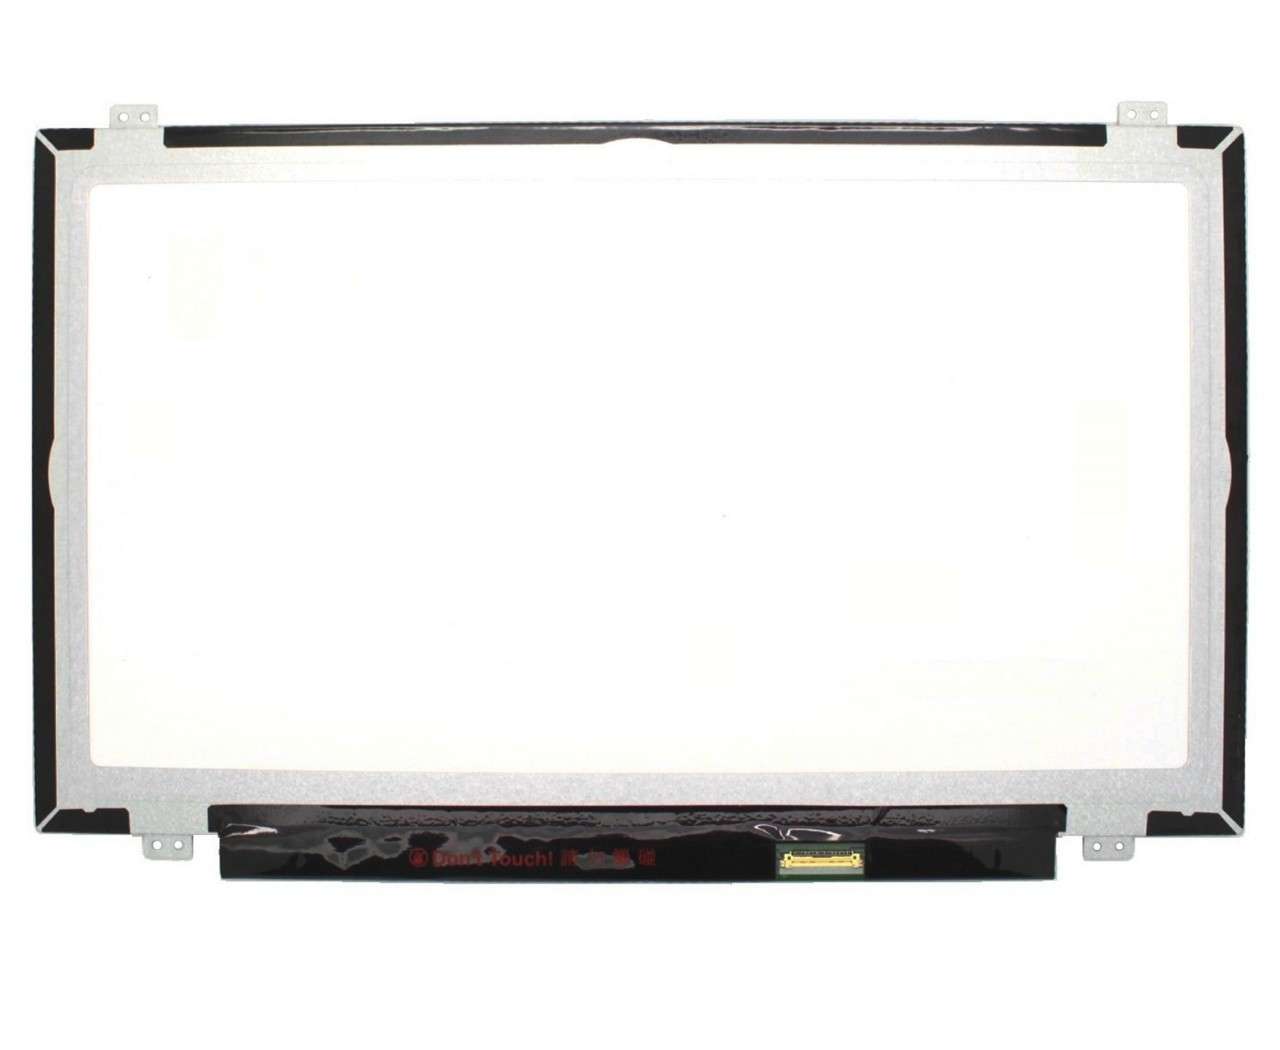 Display laptop LG LP140WF5-SPB2 Ecran 14.0 1920x1080 30 pini eDP